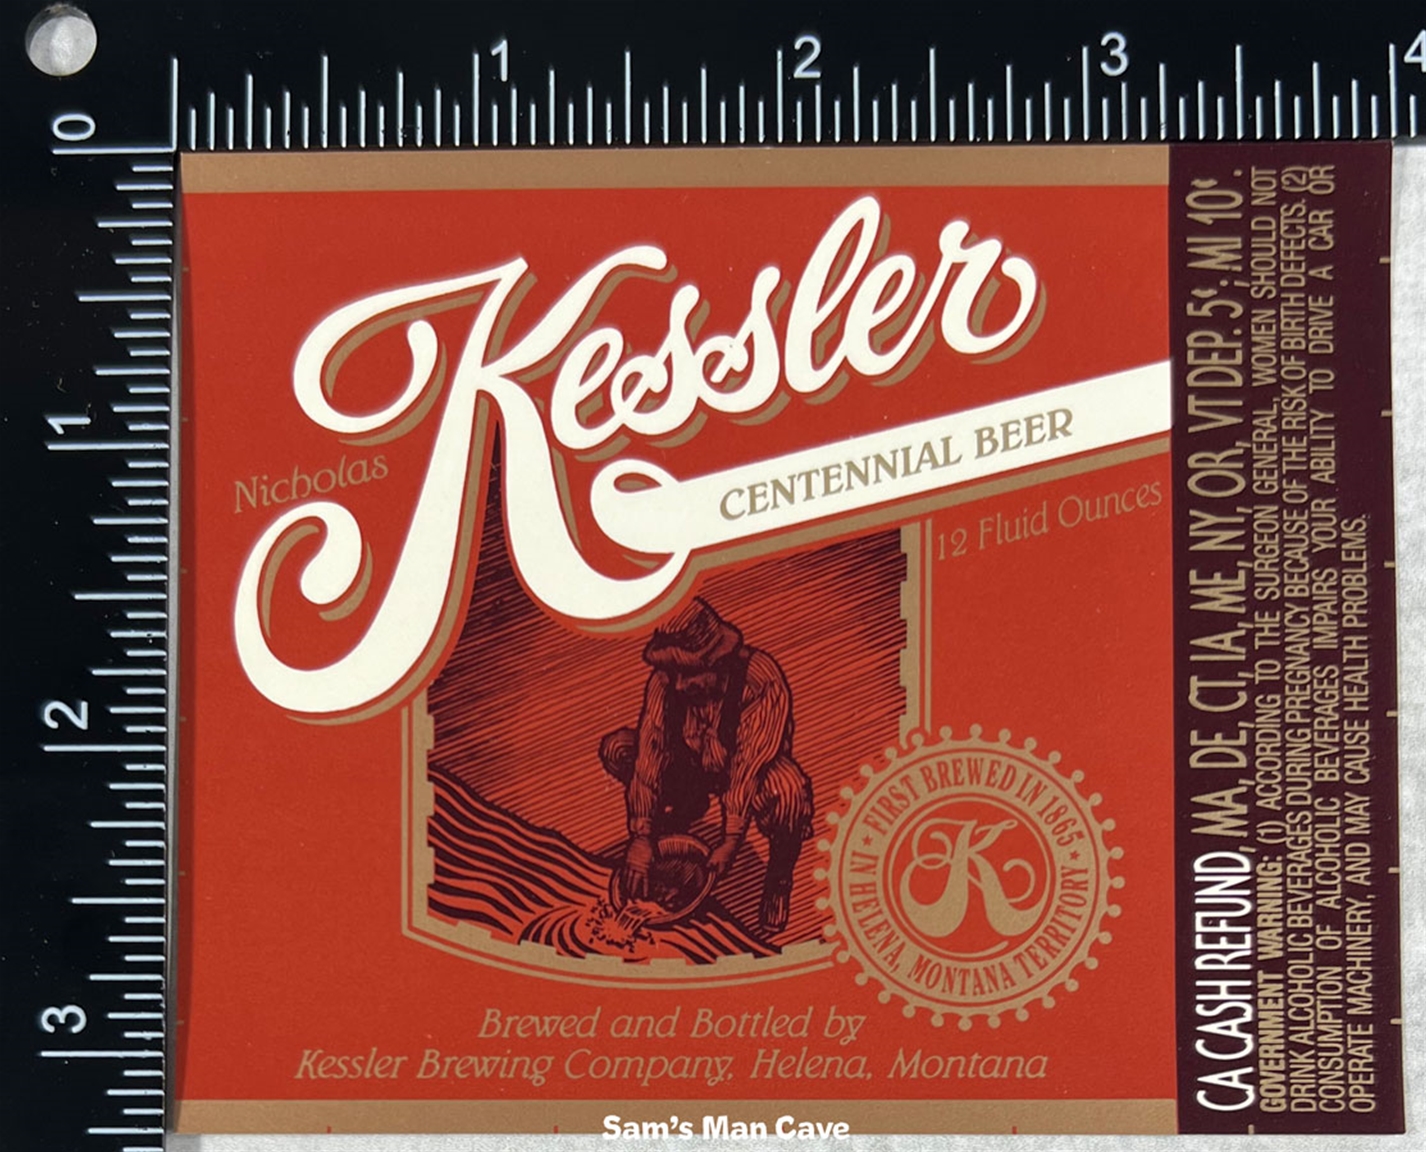 Kessler Centennial Beer Label